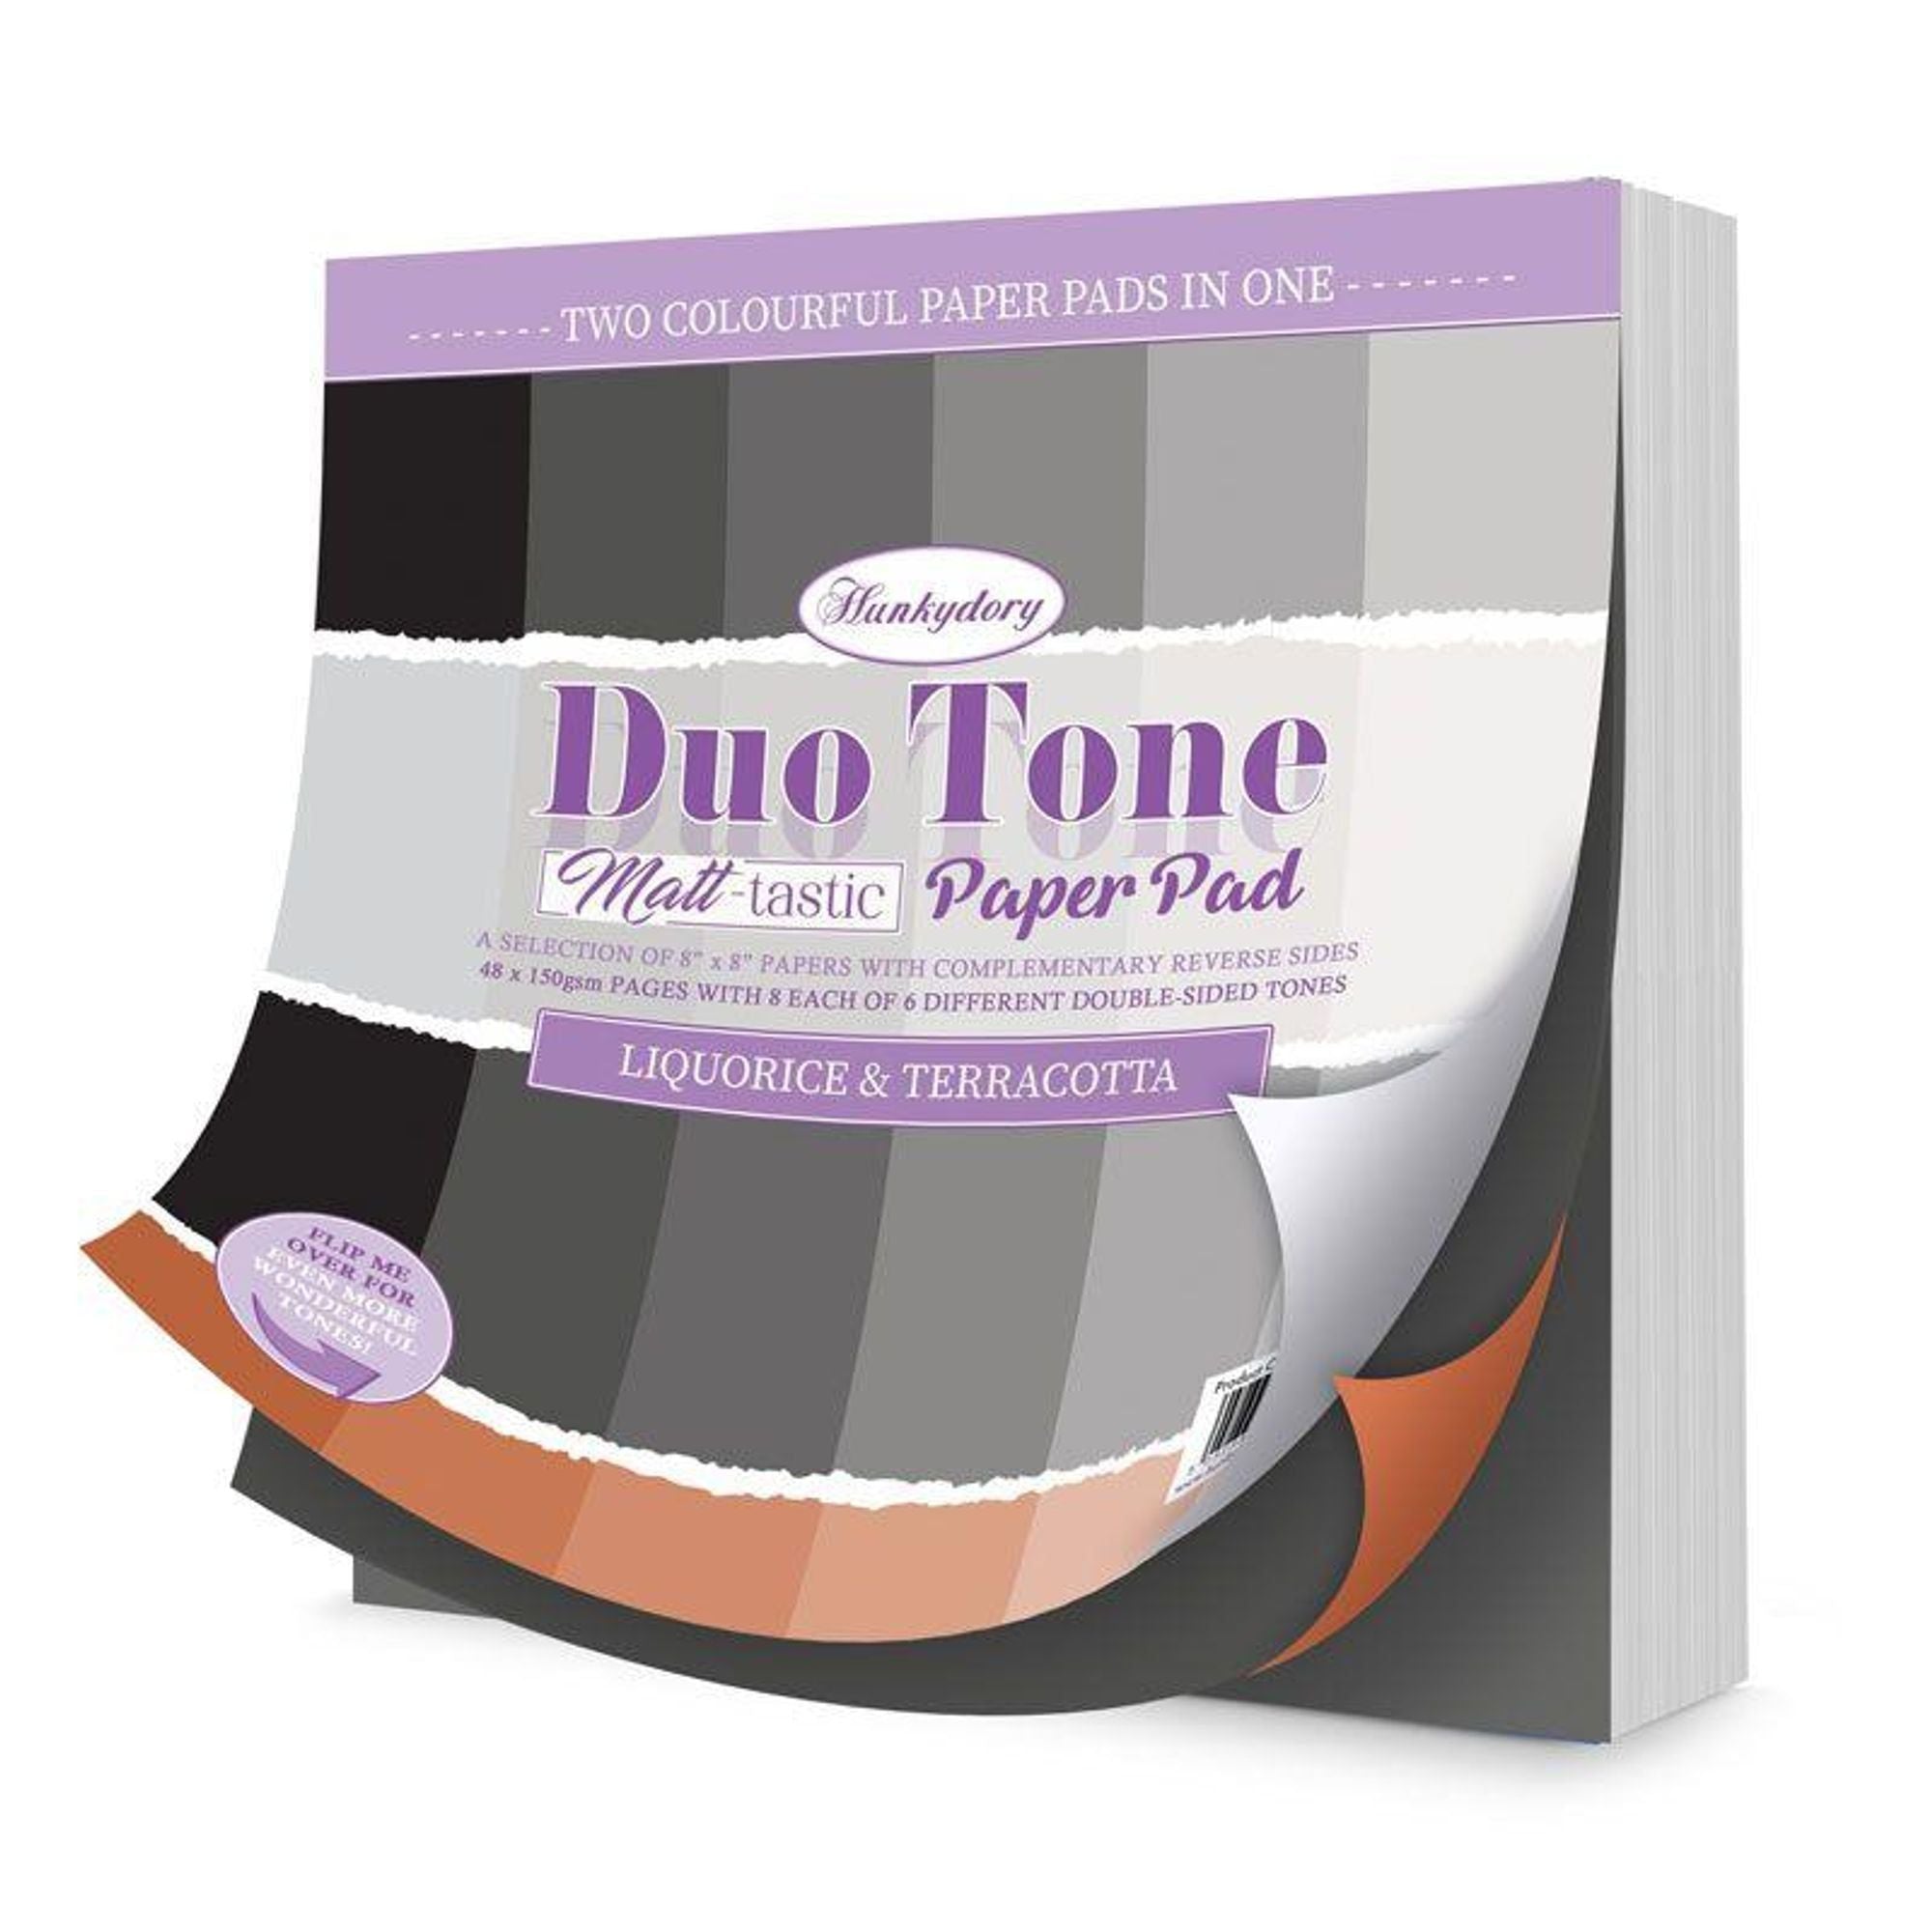 Duo Tone Paper Pad - Liquorice & Terracotta